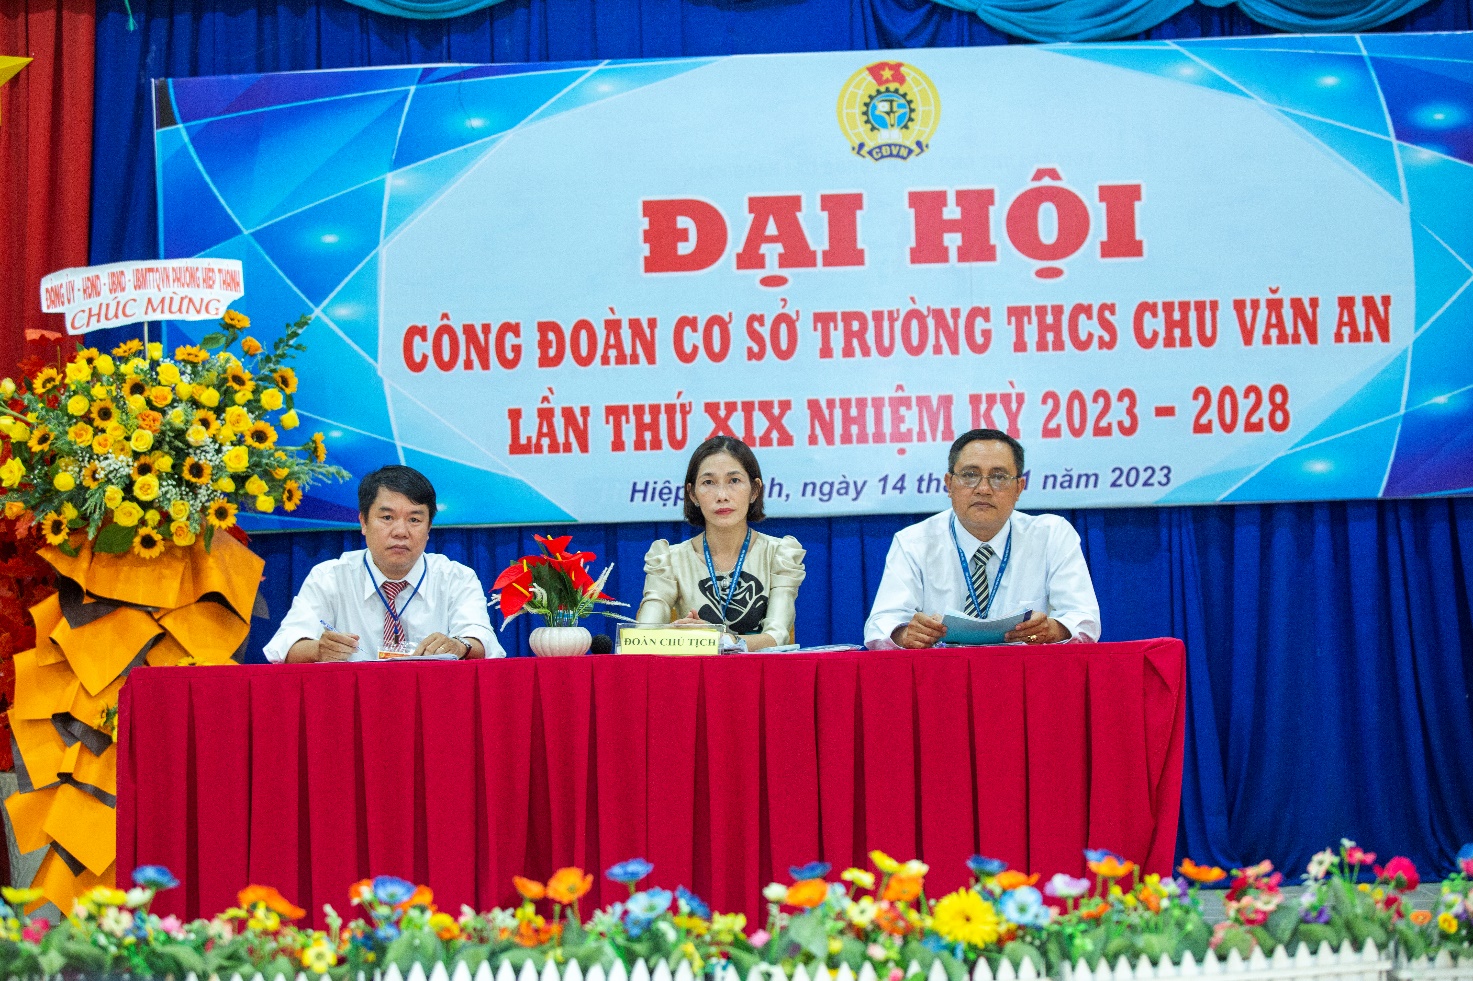 Công đoàn cơ sở Trường THCS Chu Văn An, thành phố Thủ Dầu Một, tỉnh Bình Dương tổ chức Đại hội lần thứ XIX nhiệm kỳ 2023 - 2028